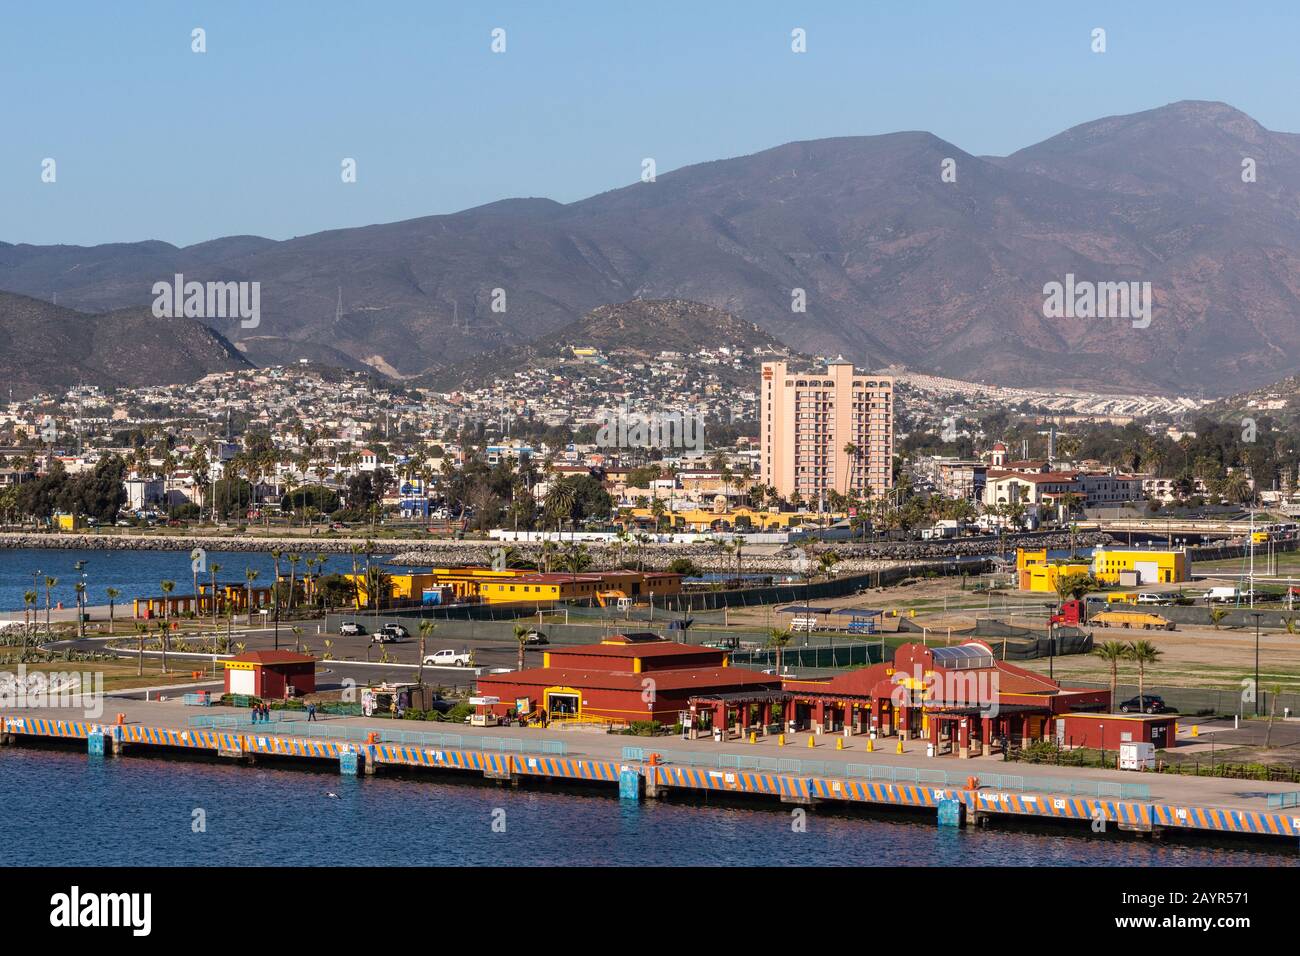 Ensenada, Mexique - 17 janvier 2012: Fermeture du terminal de croisière Rouge à l'embarcadère du port avec vue sur la ville sur la pente de la montagne à l'arrière et derrière la baie bleue Banque D'Images